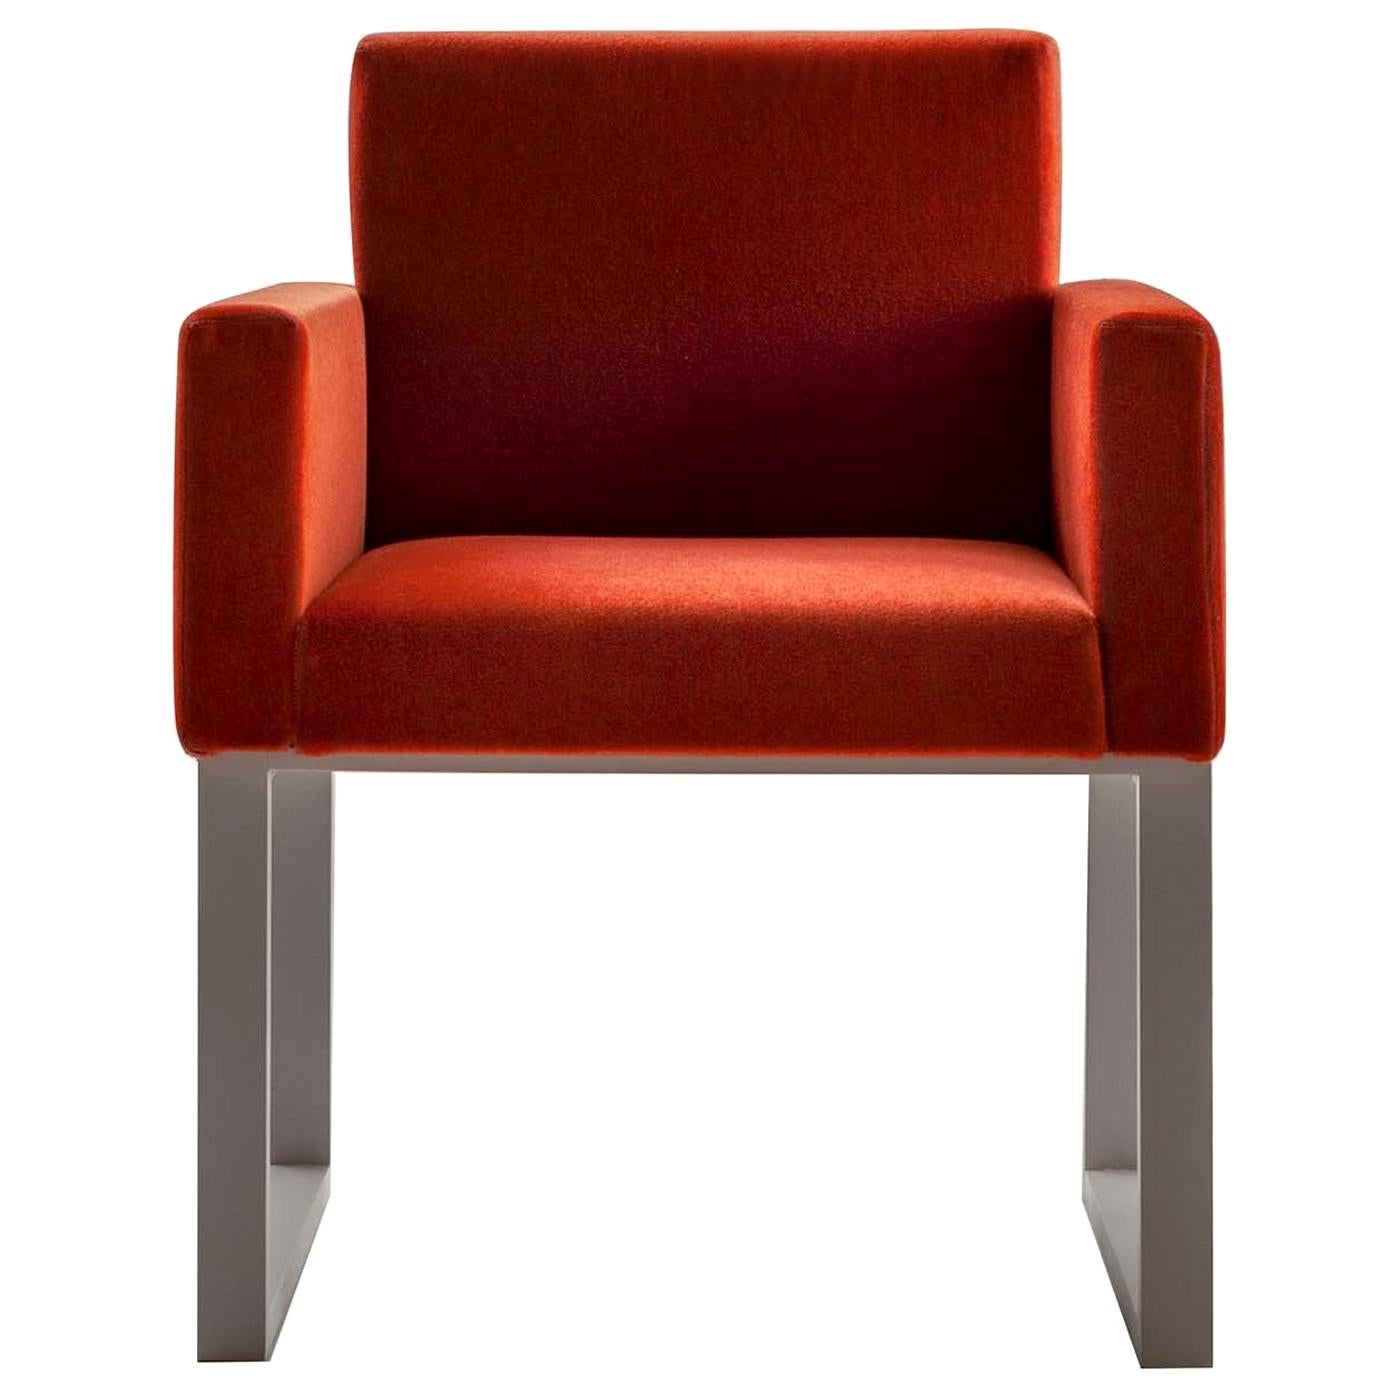 Maxima Chair by Bartoli Design